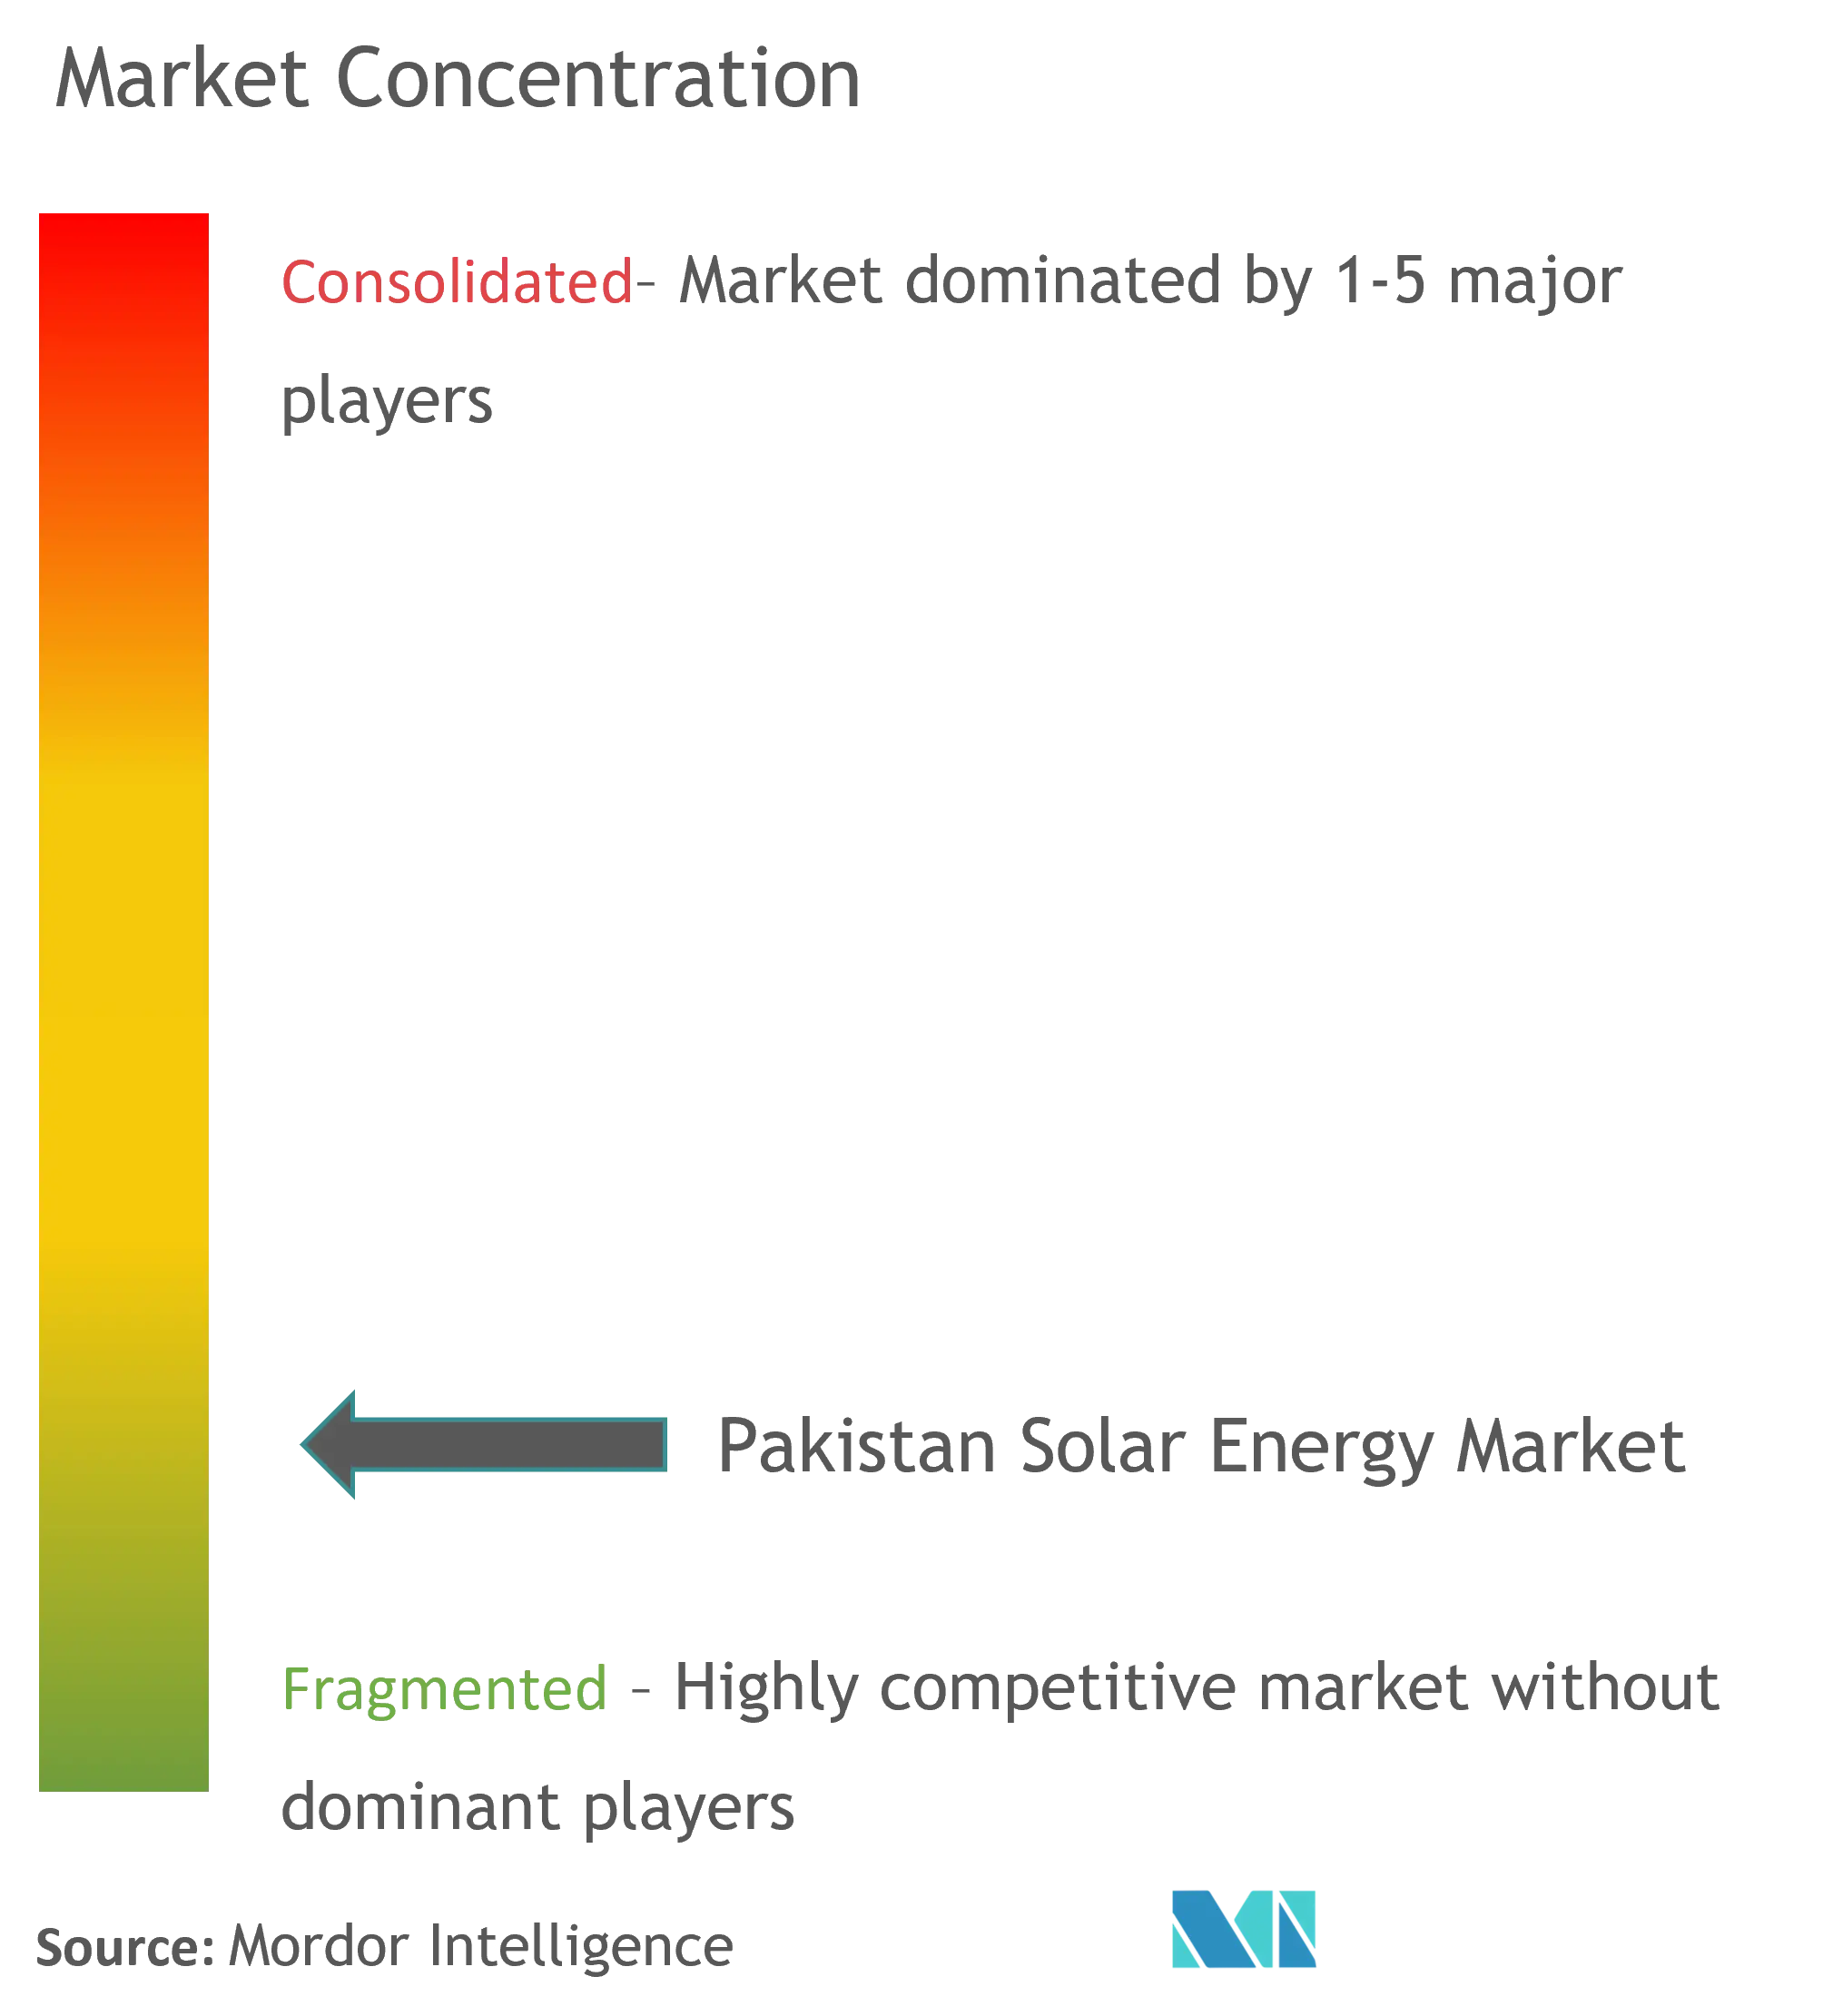 巴基斯坦 太阳能市场集中度